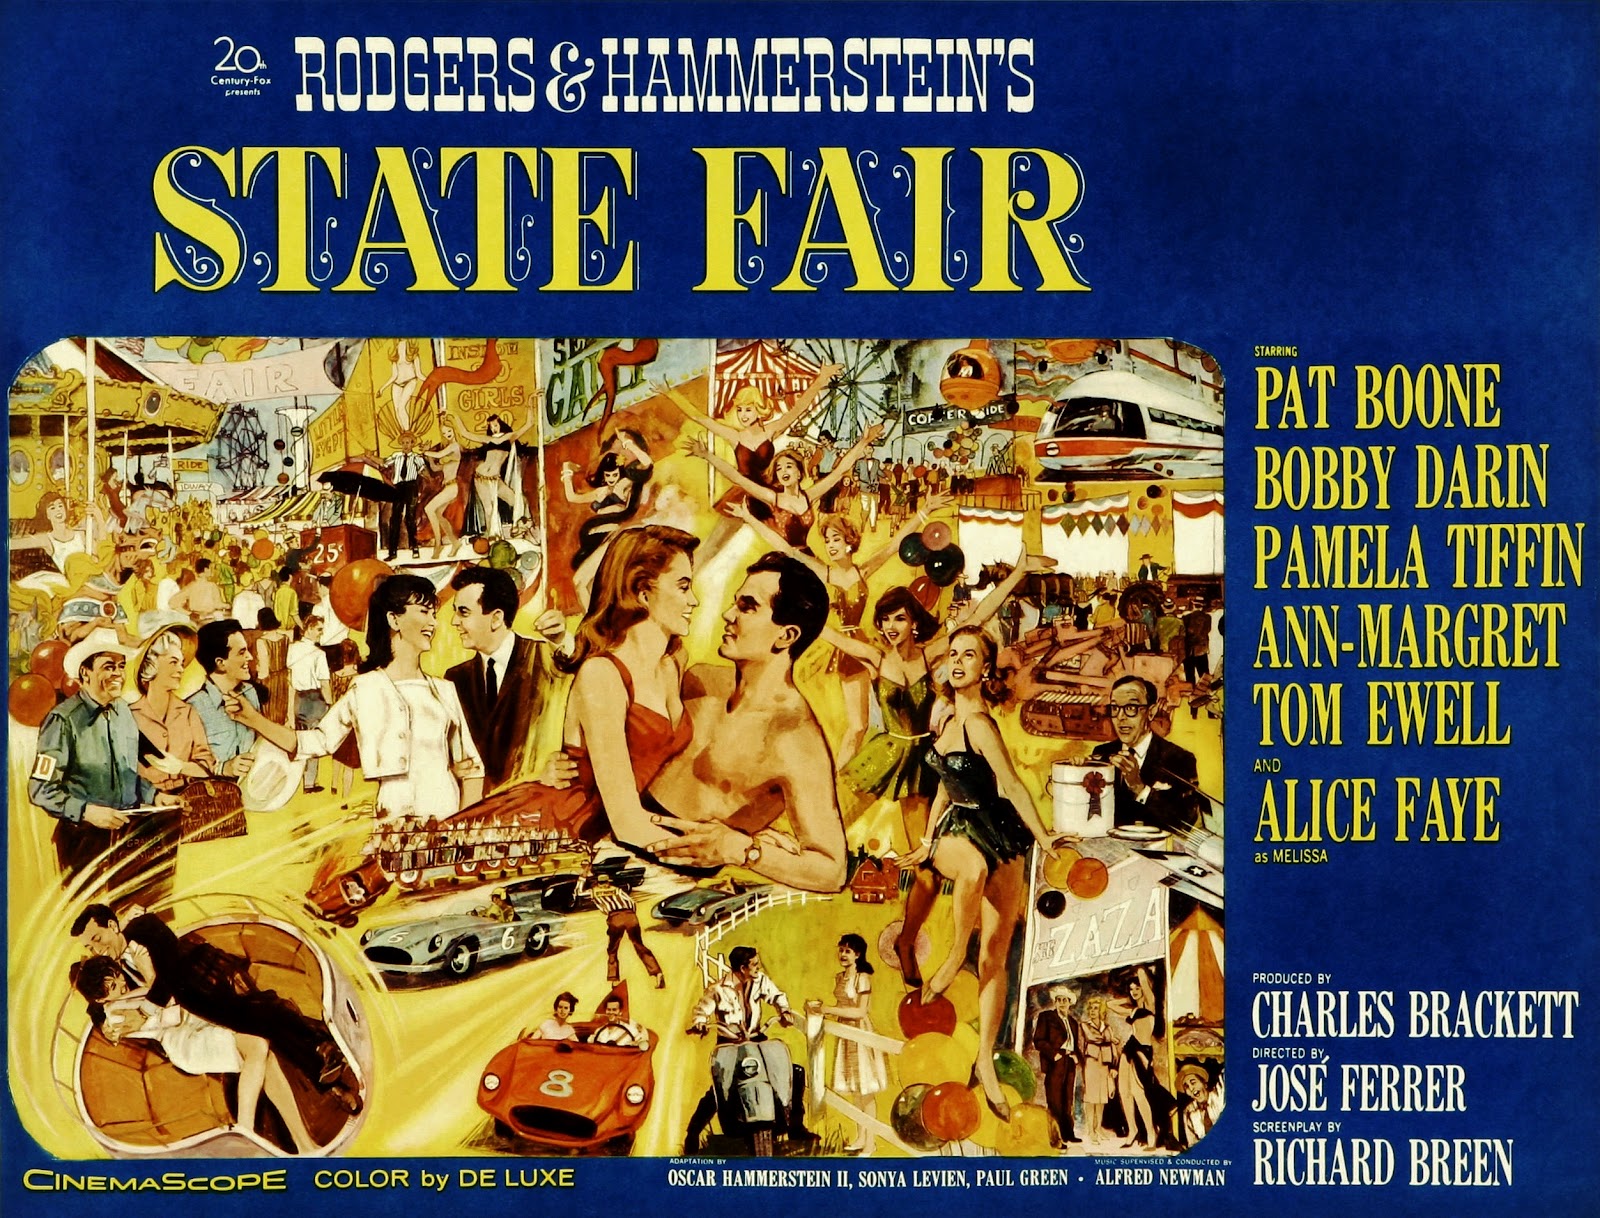 TBT 1962 "State Fair" Film State Fair of Texas